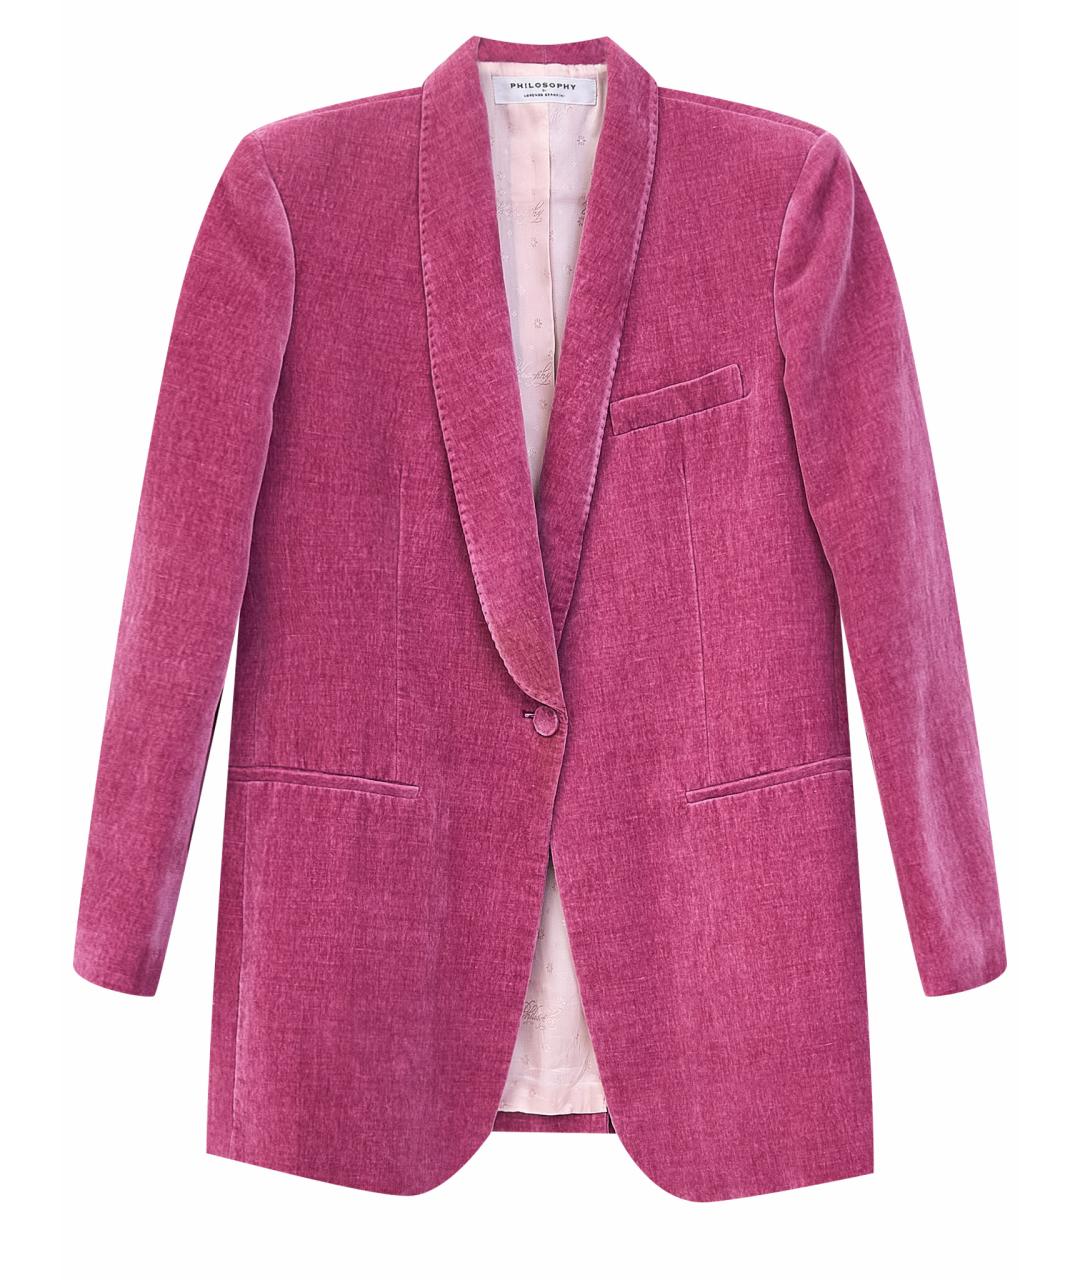 PHILOSOPHY DI LORENZO SERAFINI Розовый хлопковый жакет/пиджак, фото 1